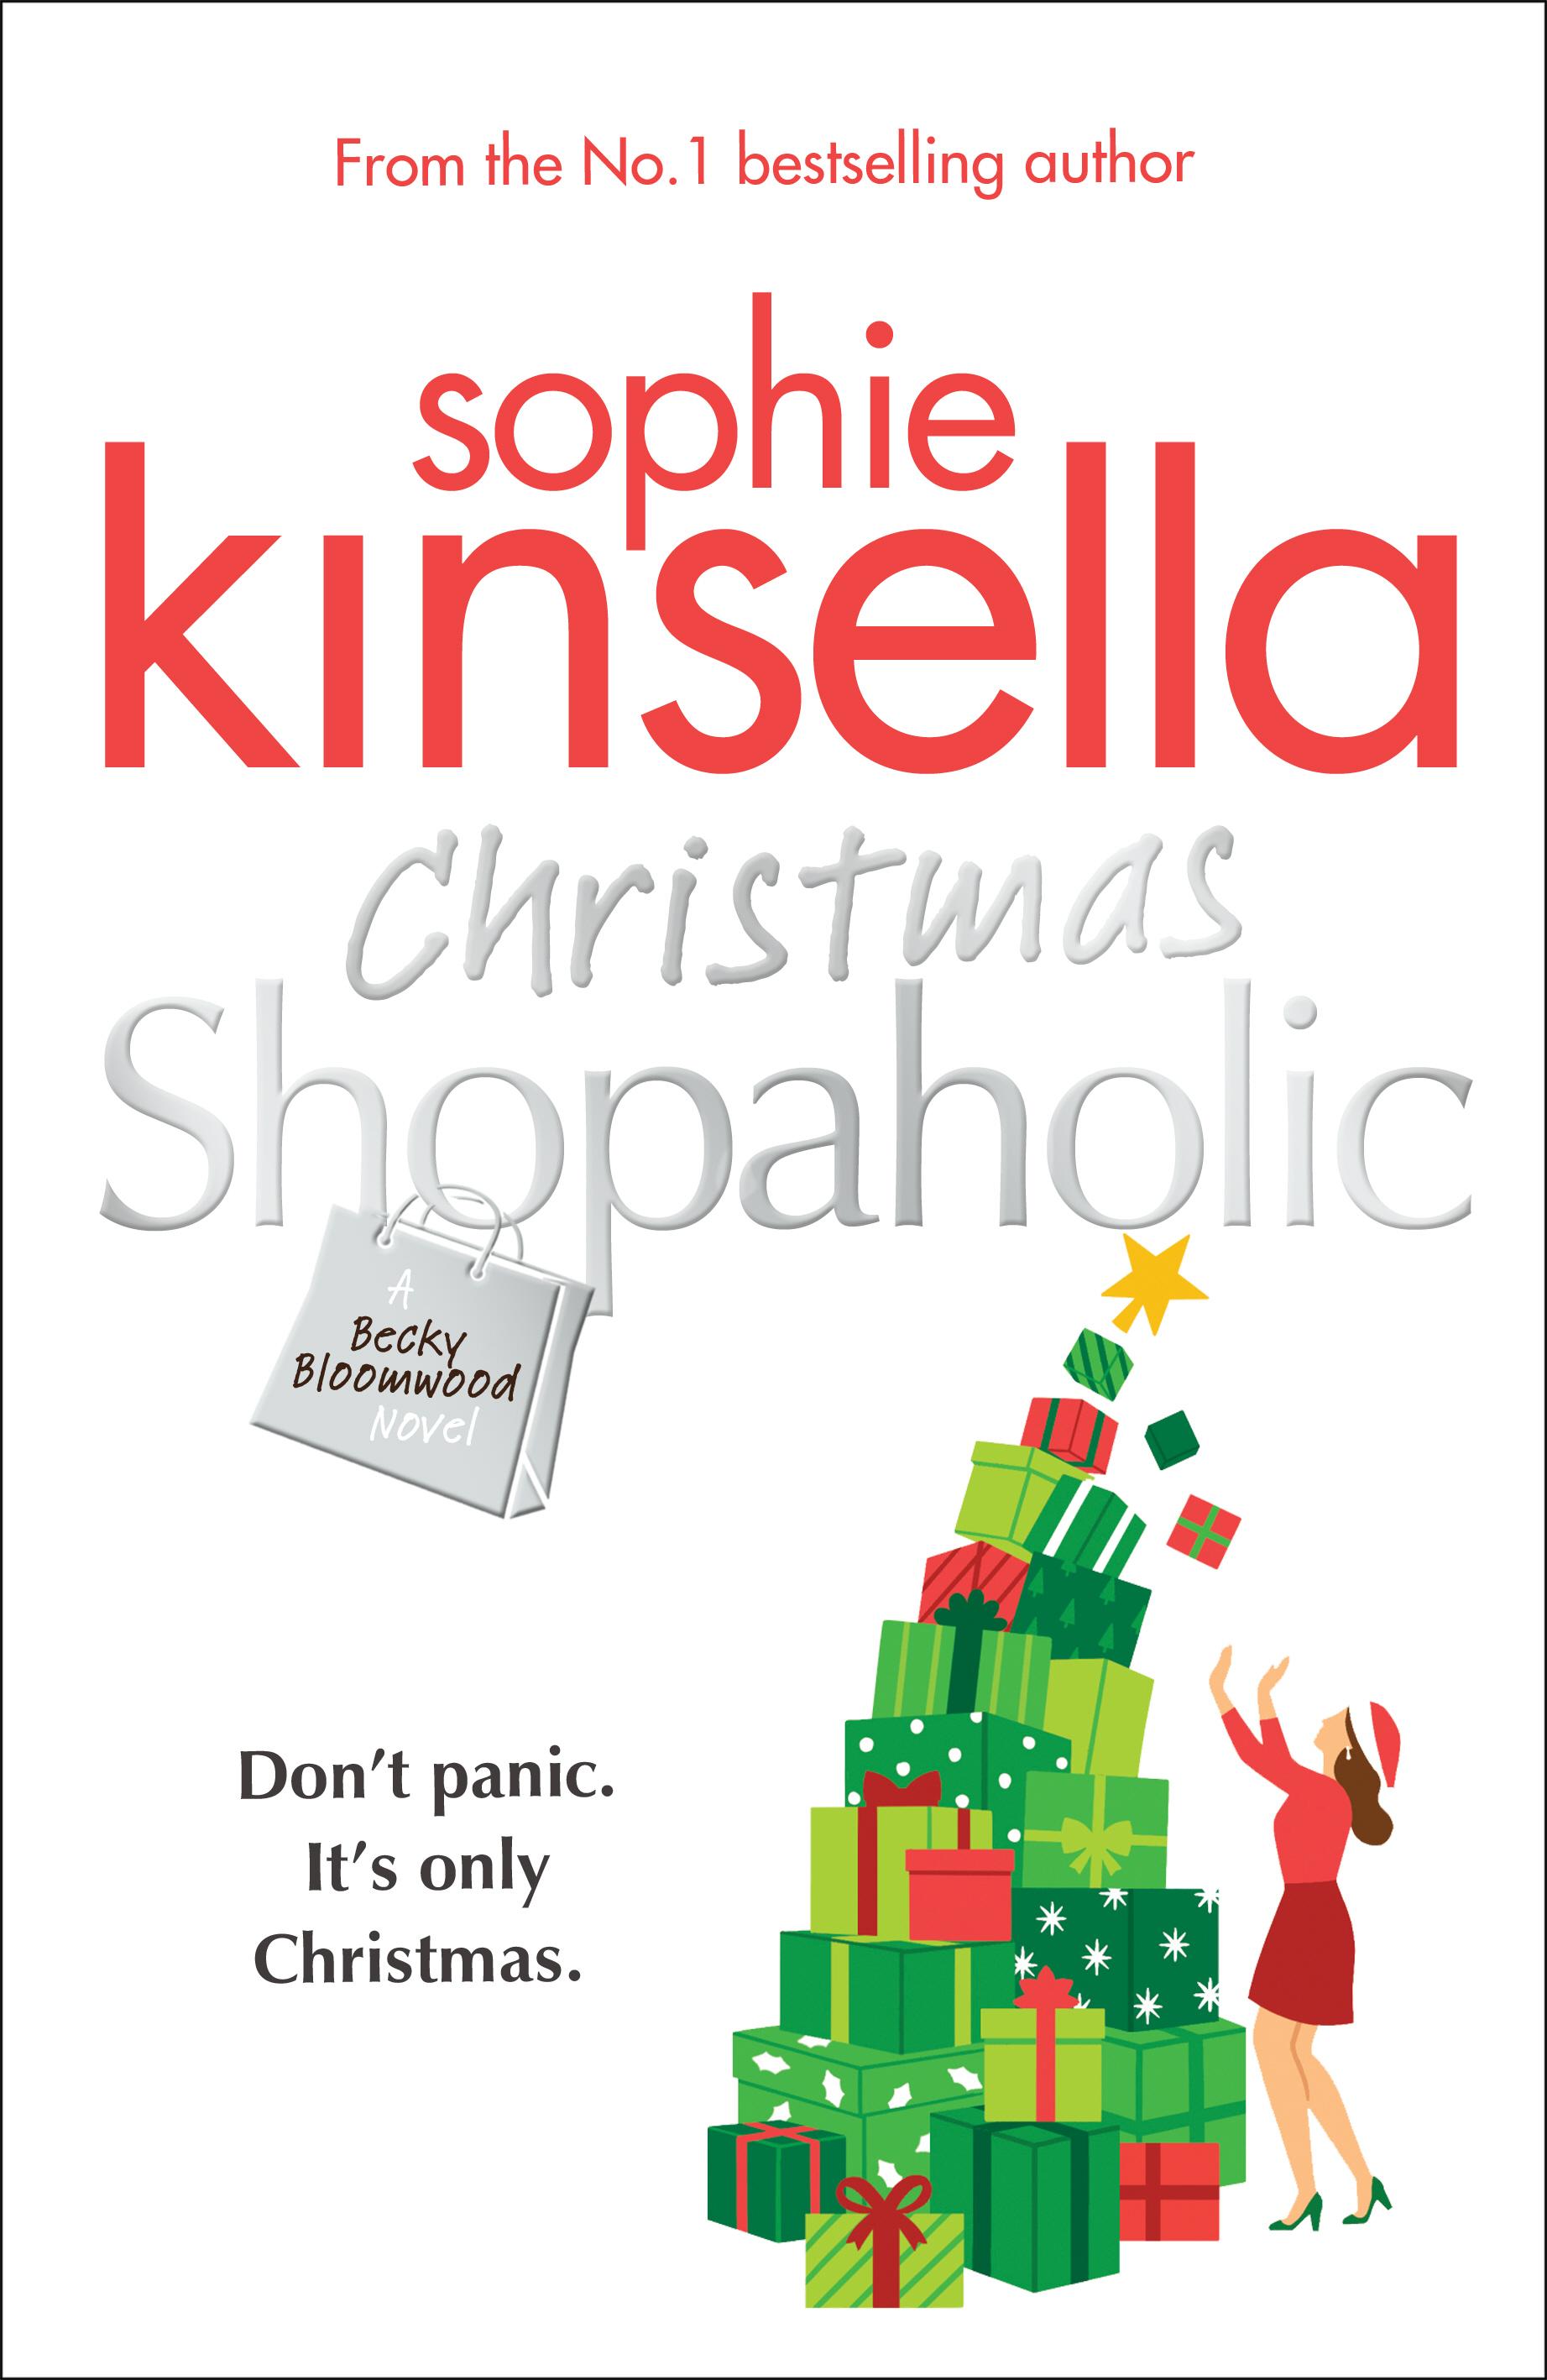 Christmas Shopaholic - Sophie Kinsella